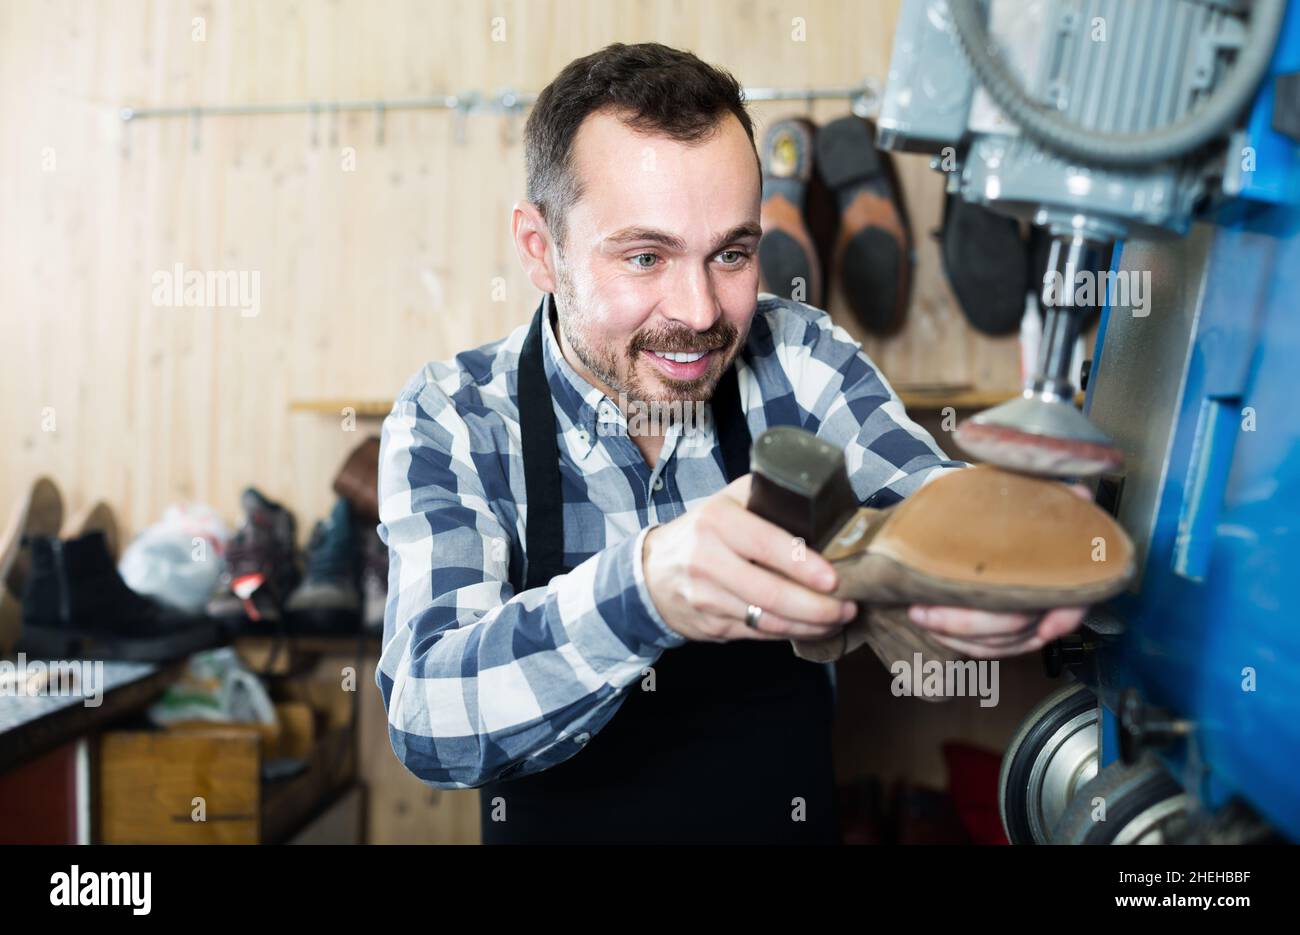 Man worker restore footwear in repair workplace Stock Photo